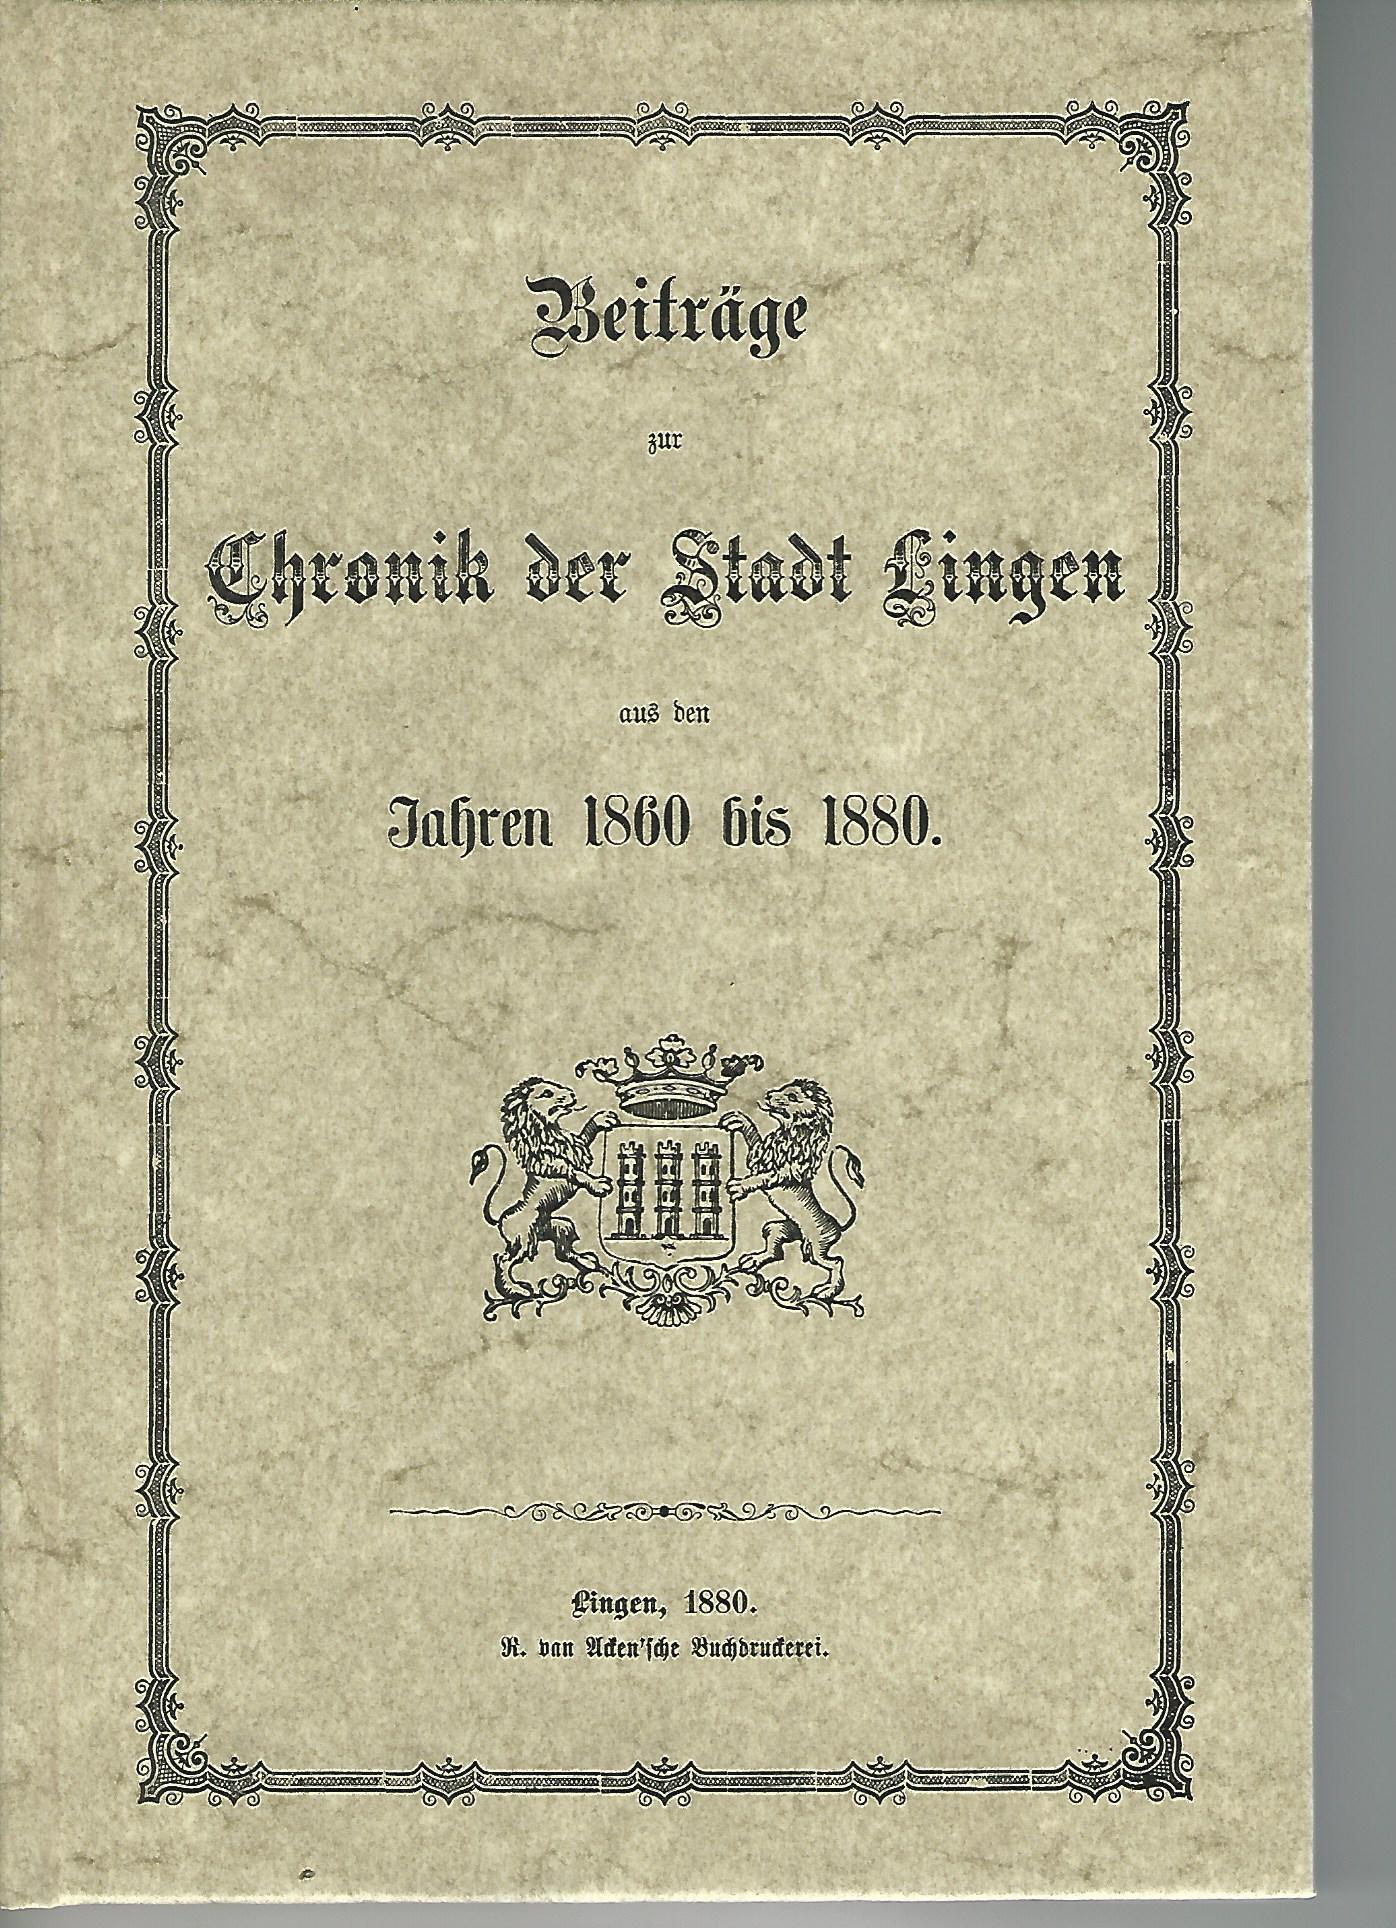 Beitrage zur Chronik der Stadt Lingen aus den Jahren 1860 bis 1880.